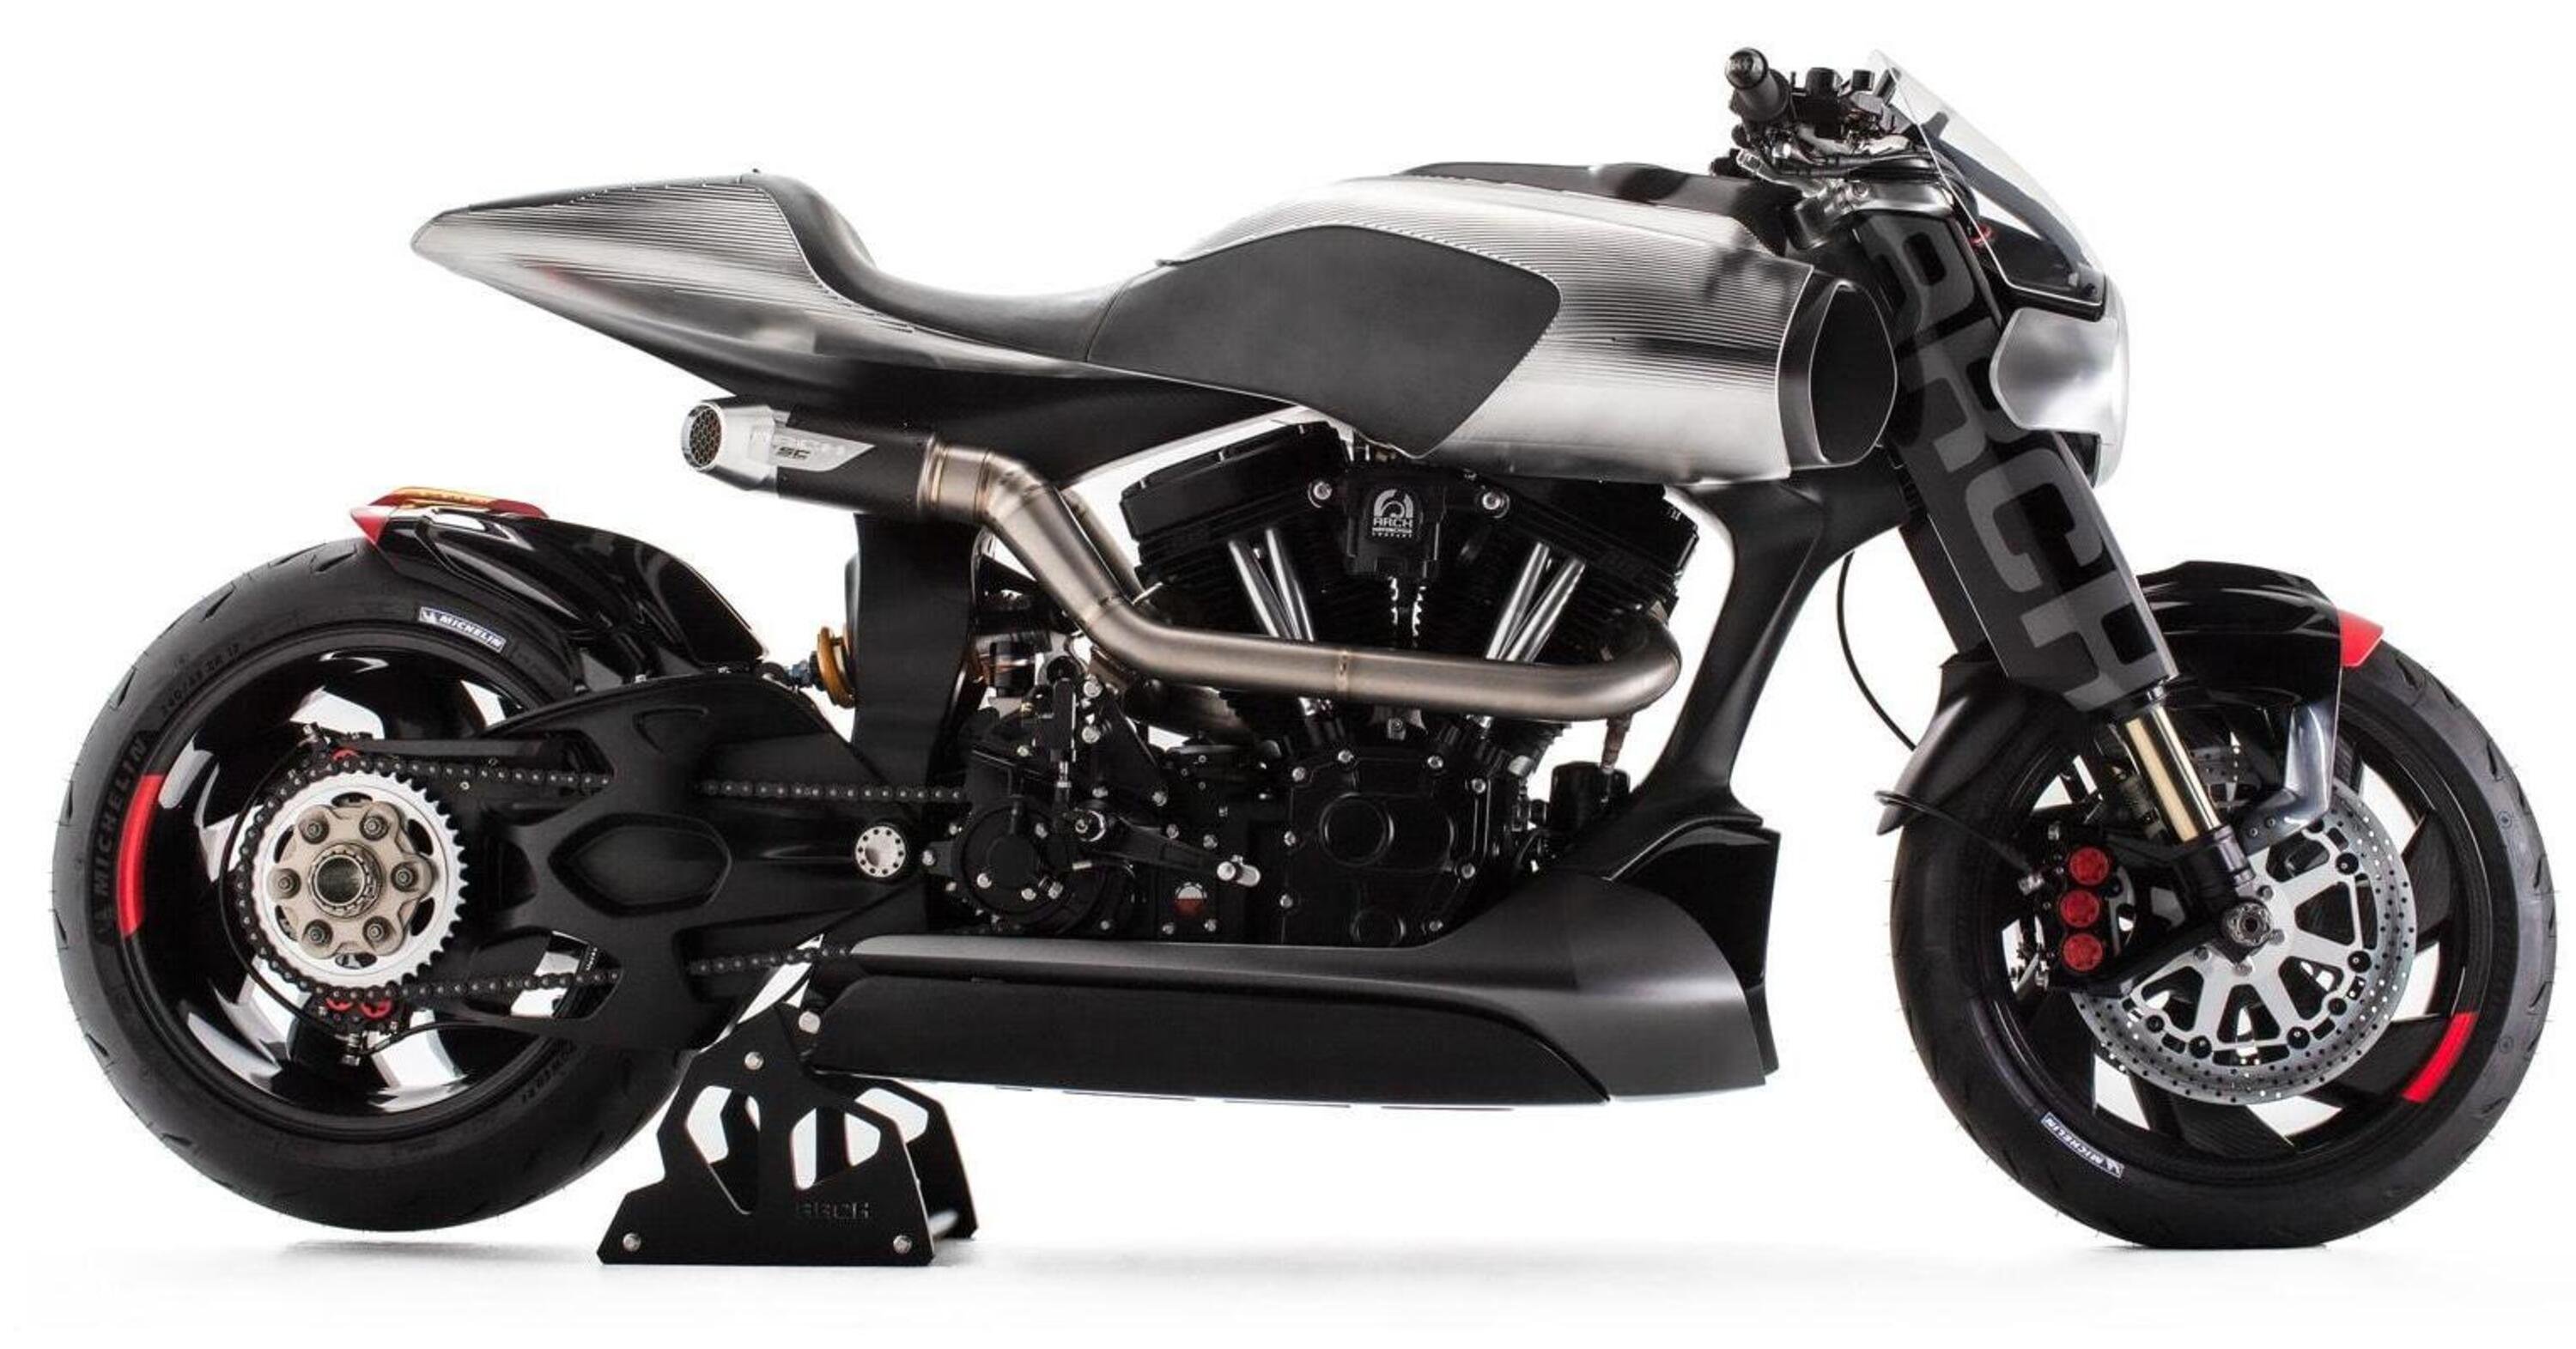 ARCH Motorcycle di Keanu Reeves e Cyberpunk 2077: dalla strada al videogame